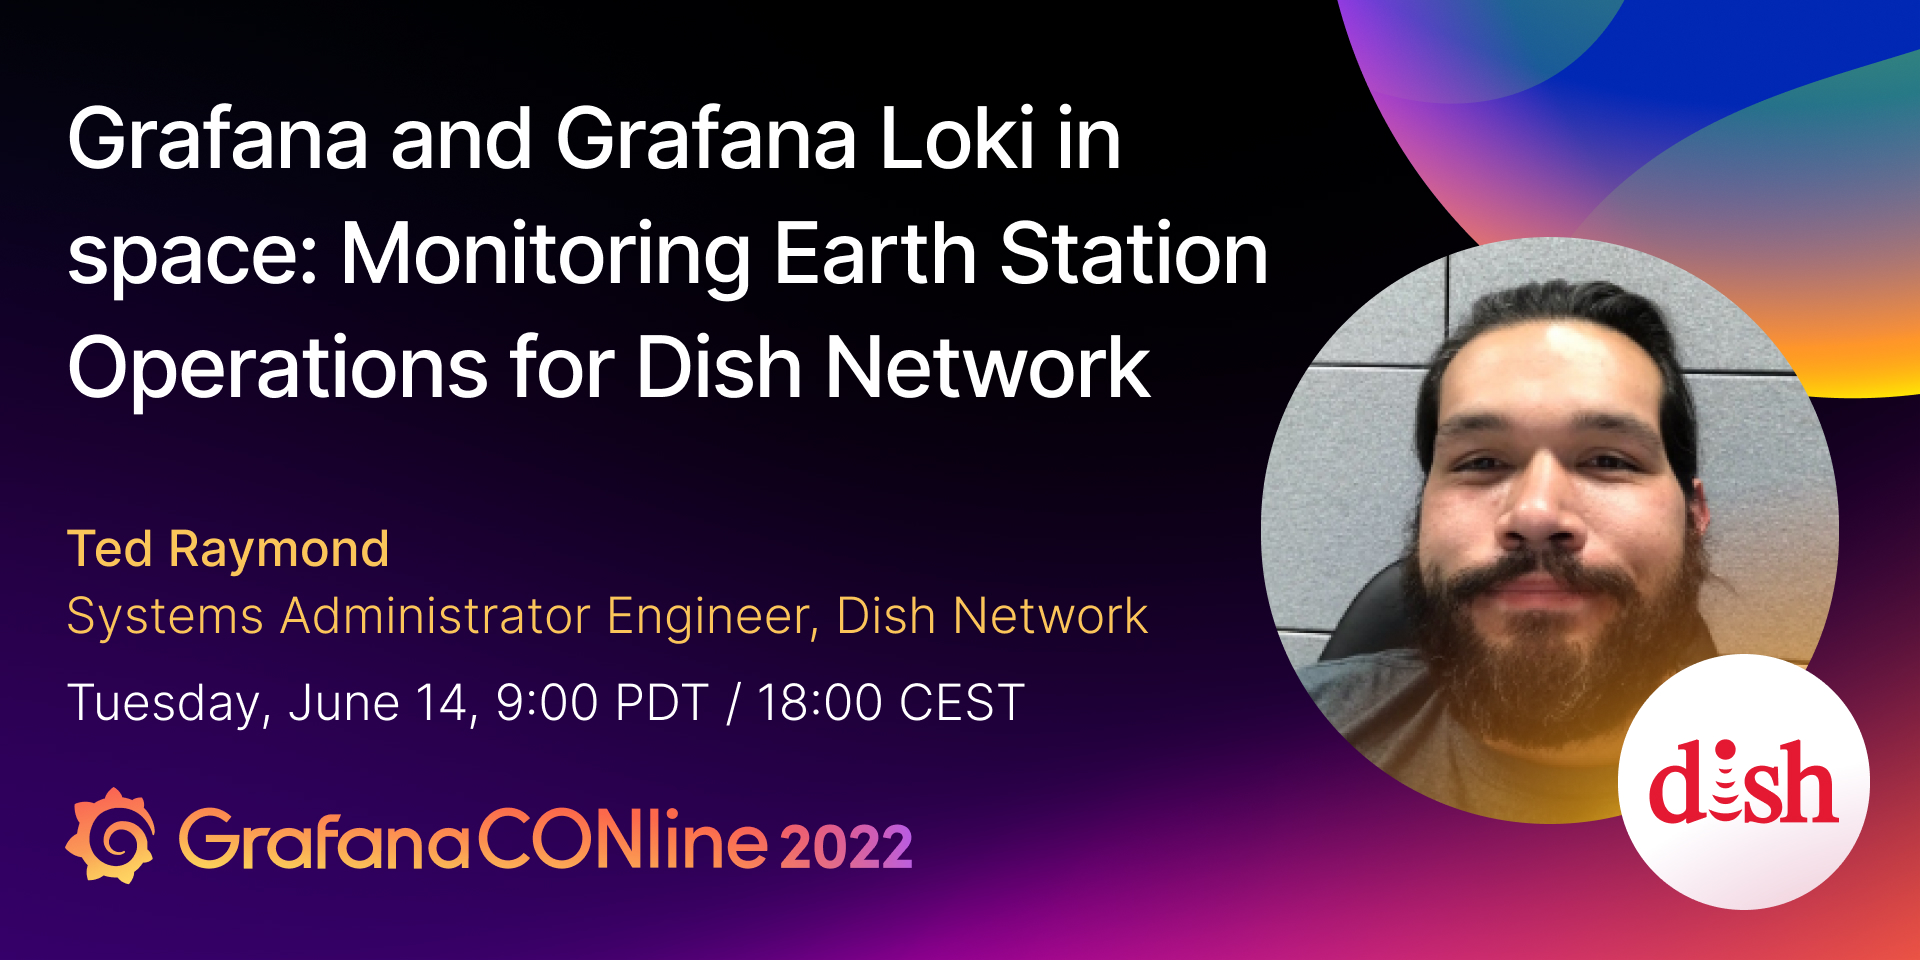 太空中的Grafana和Grafana Loki:碟形网络地面站运行监测